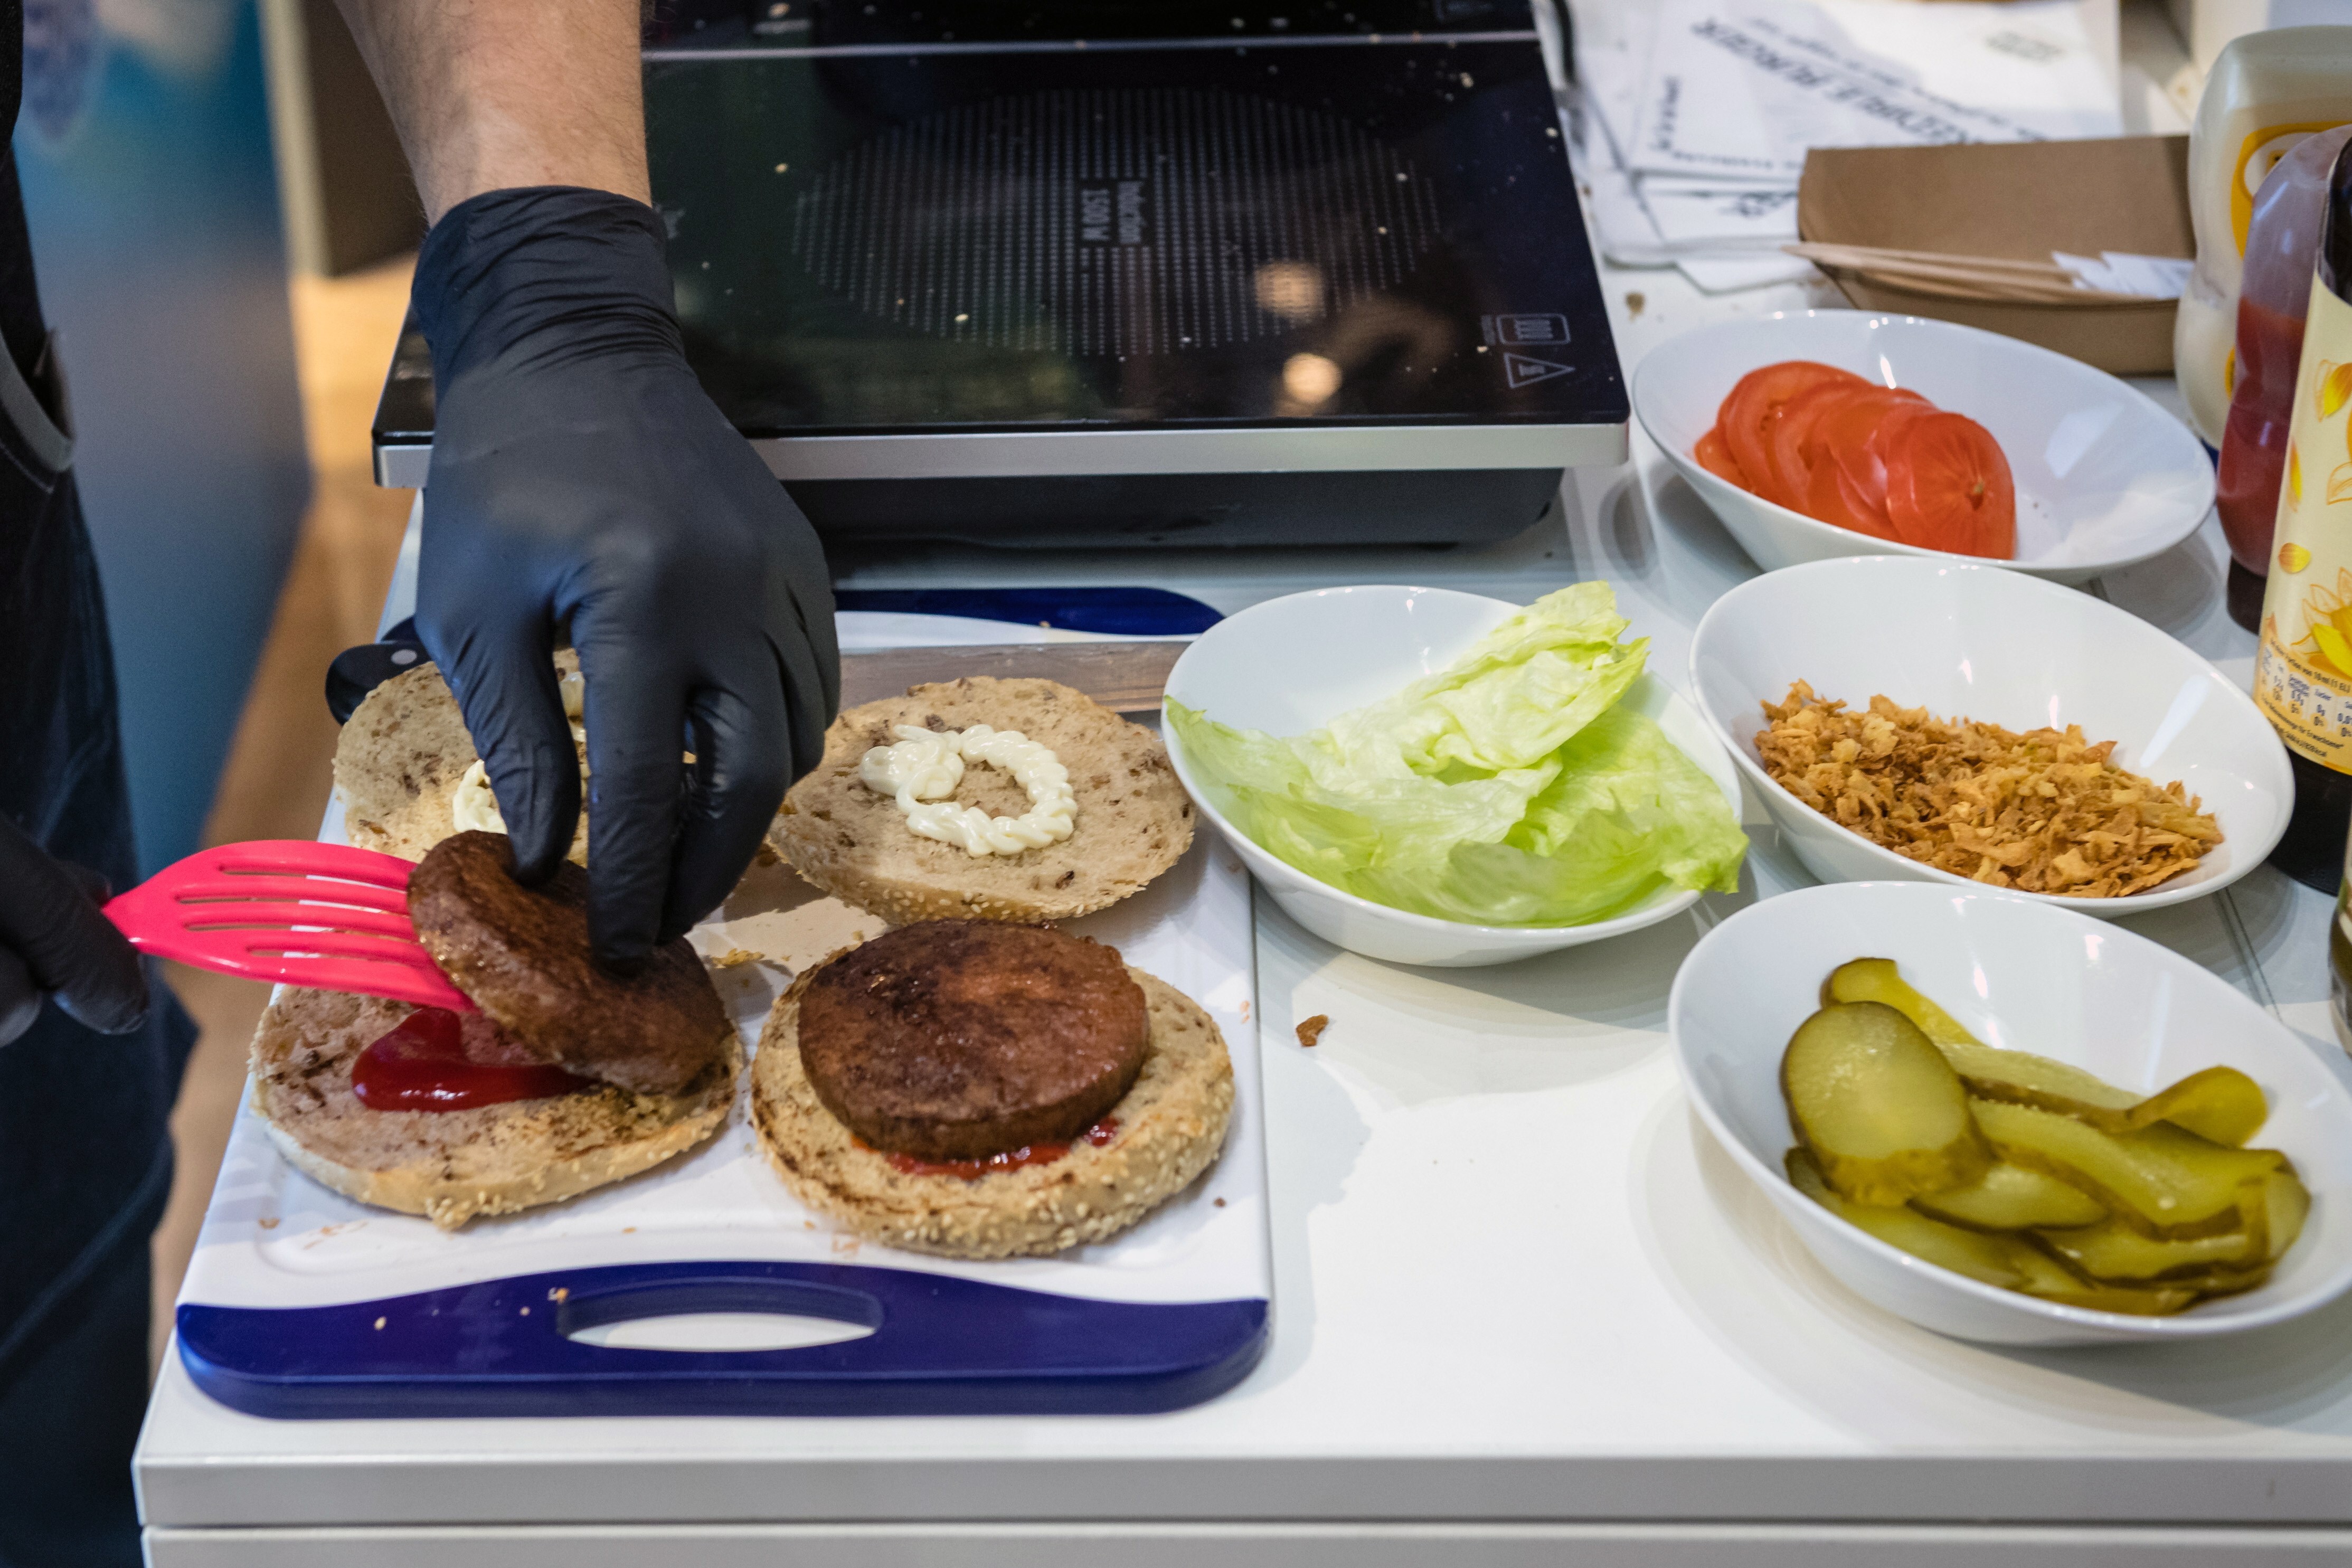 La hamburguesa vegetal ya está instalada en el país, y cada vez suma más adeptos